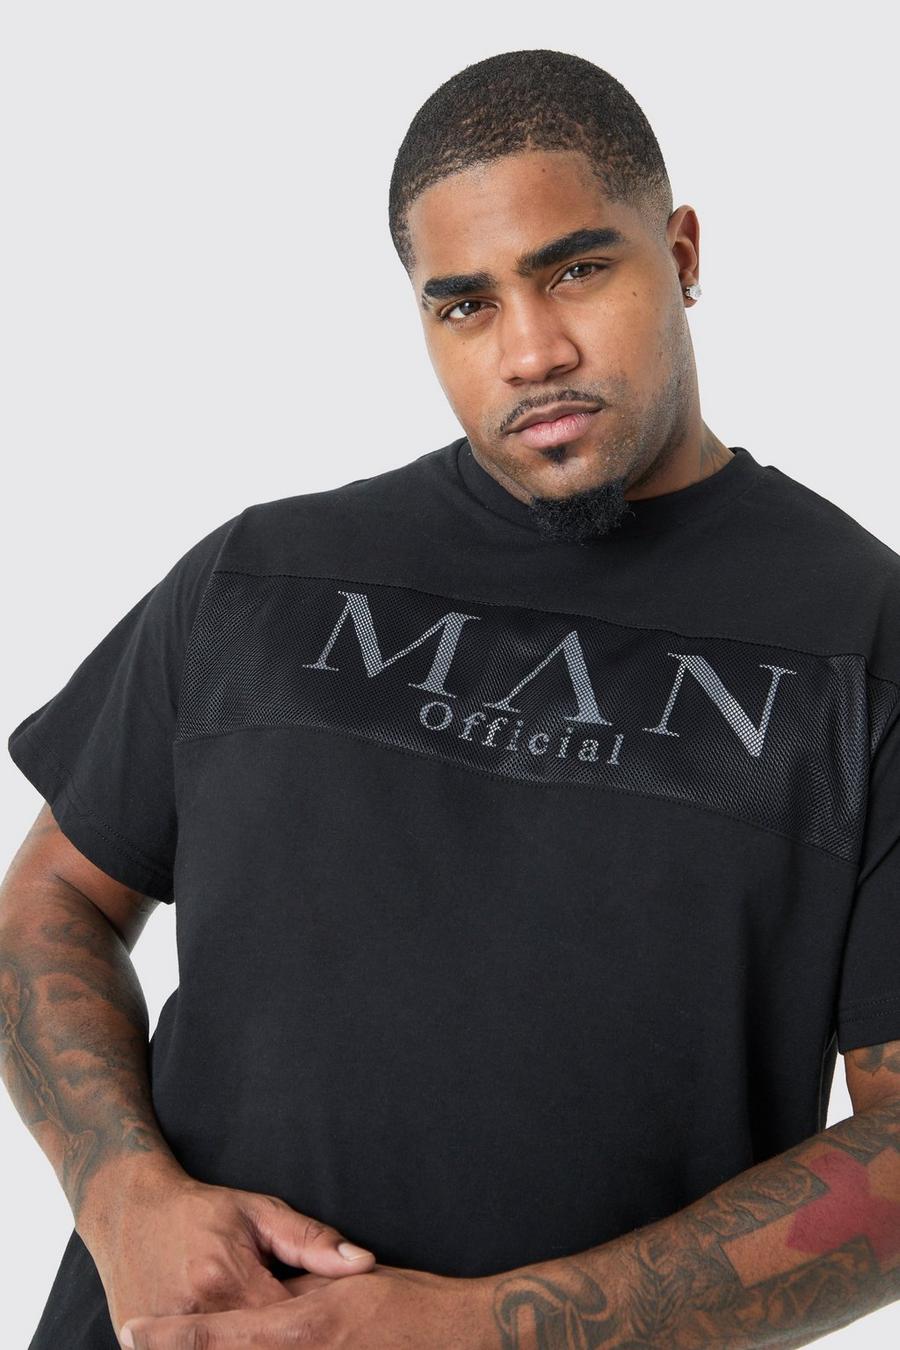 Plus Man Slim-Fit T-Shirt mit reflektierendem Mesh-Overlay, Black